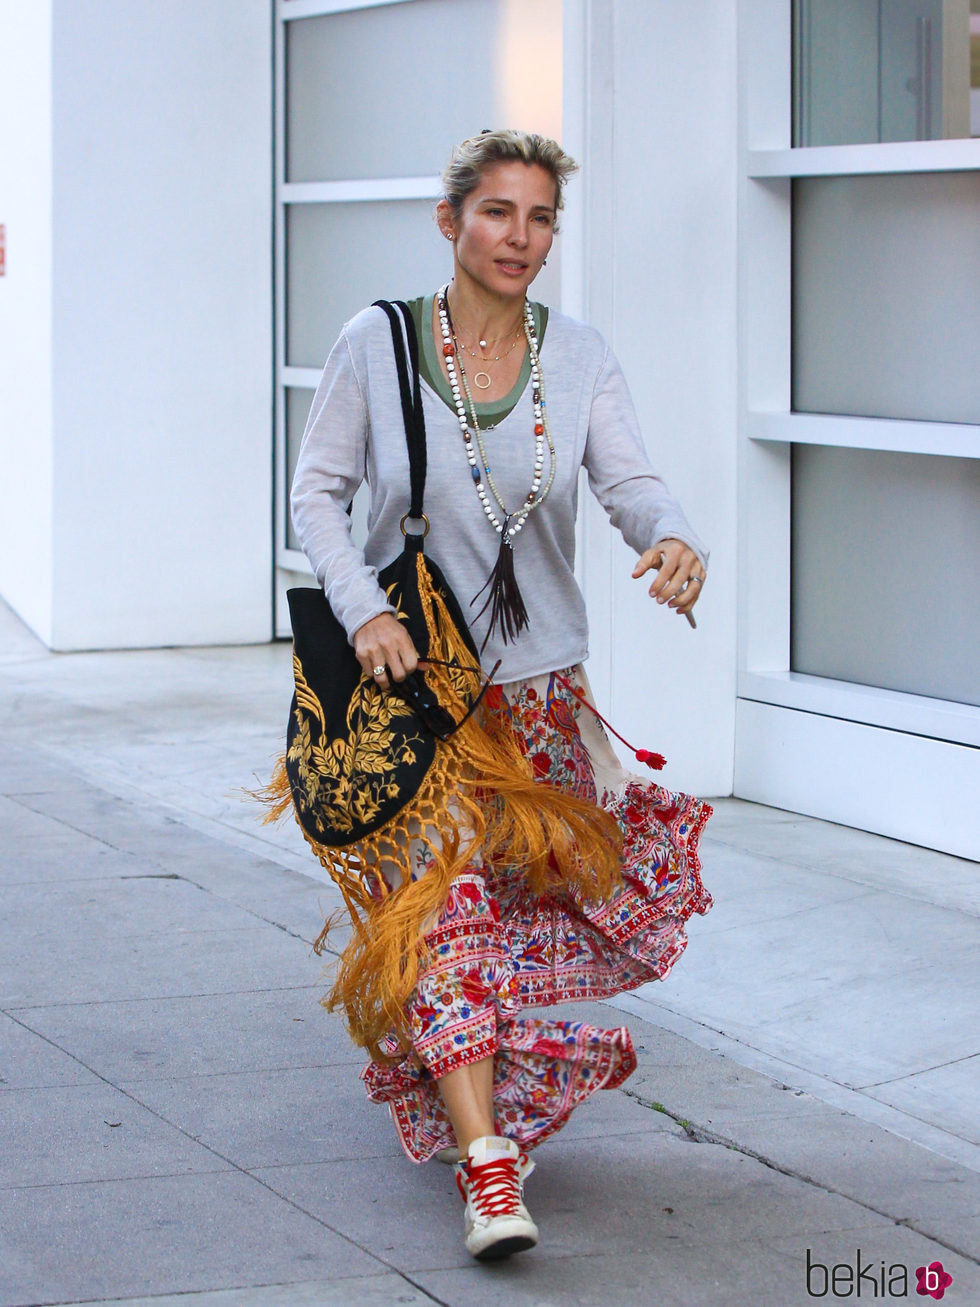 Elsa Pataky con un outfit bohemio en las calles de Los Ángeles